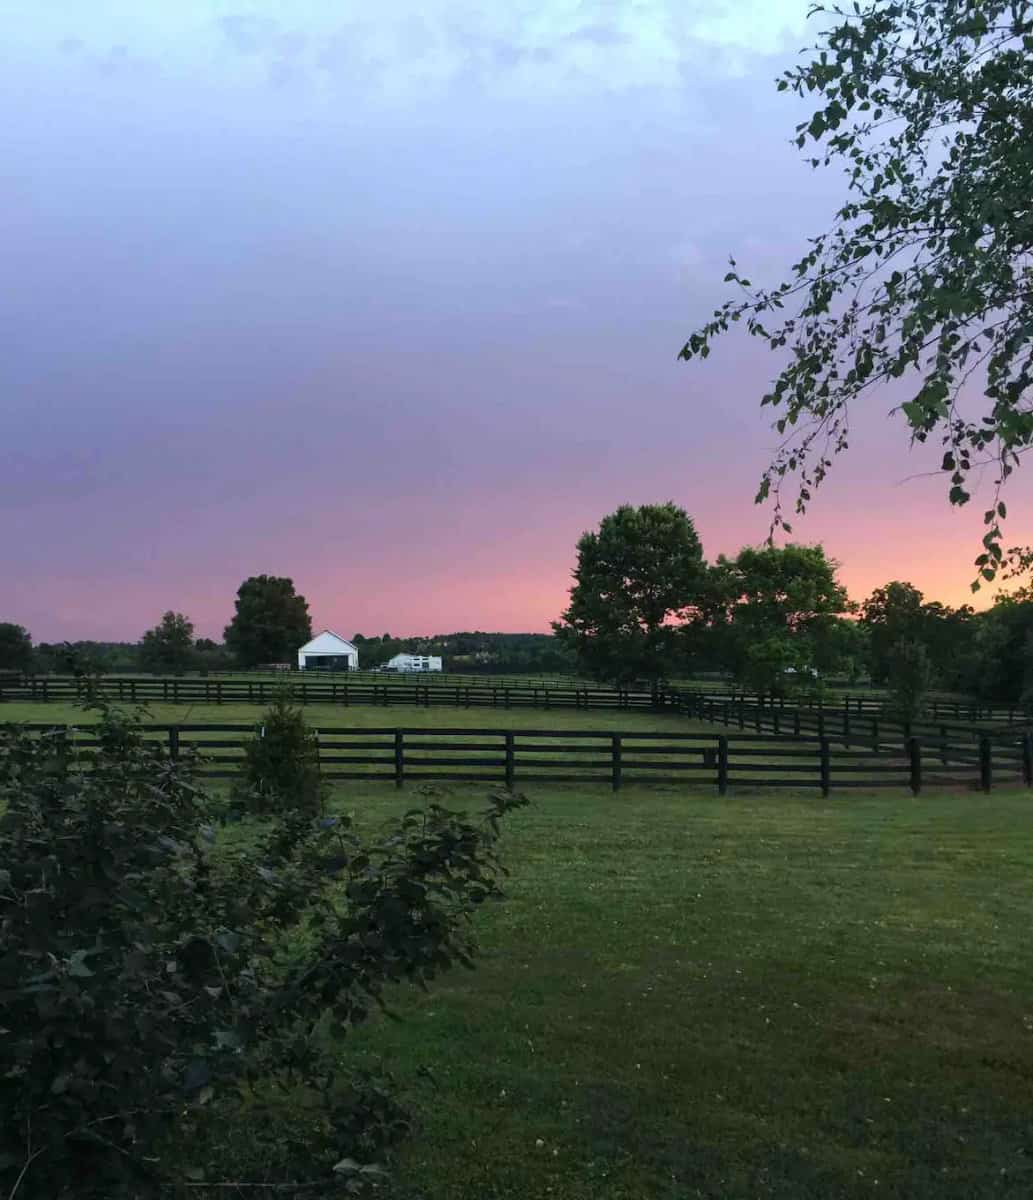 sunset over a horse farm in Lexington, Ky